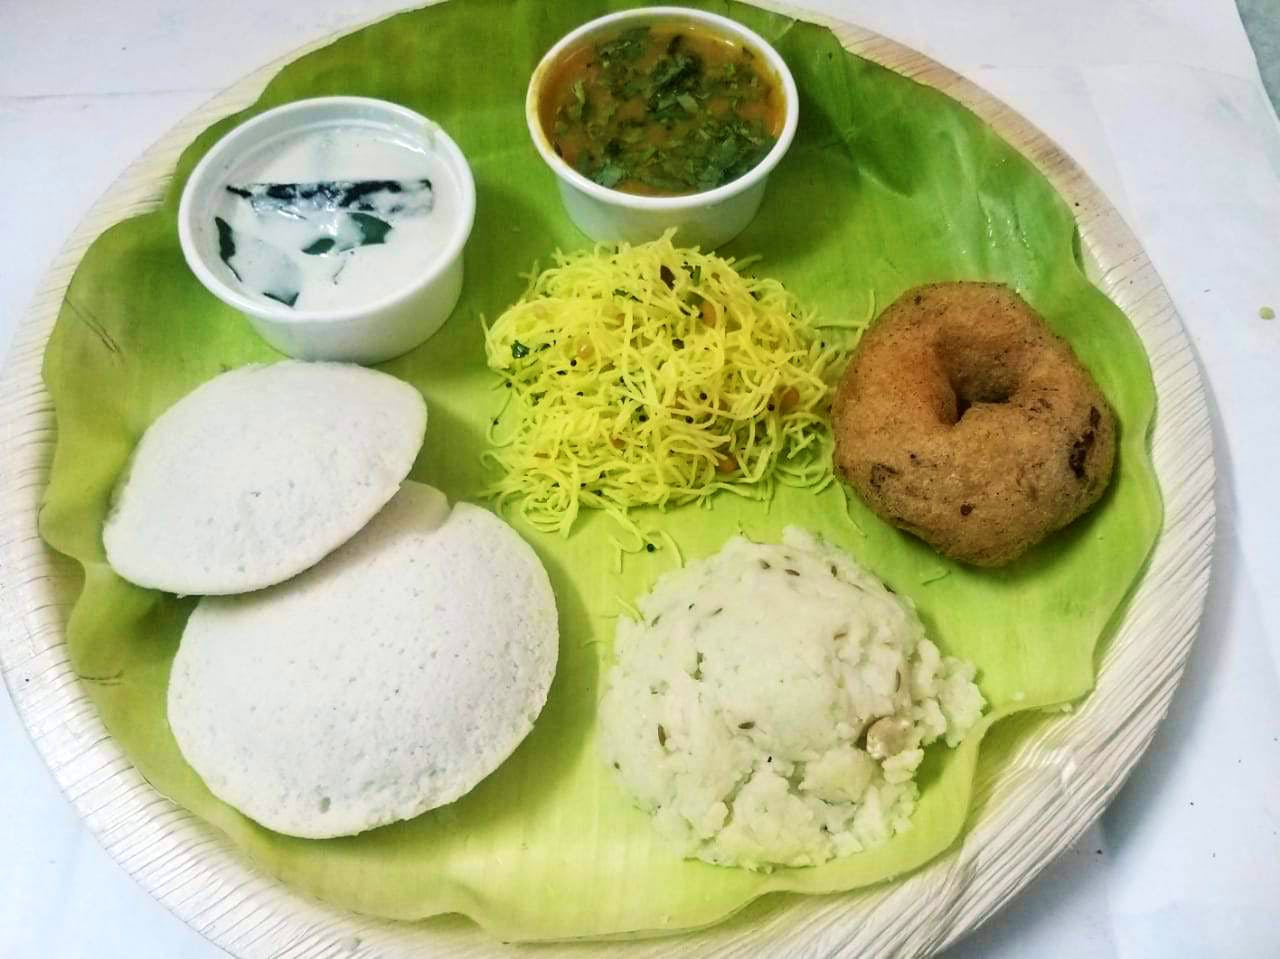 Dish,Food,Cuisine,Idli,Ingredient,Meal,Produce,Vegetarian food,Comfort food,Tamil food